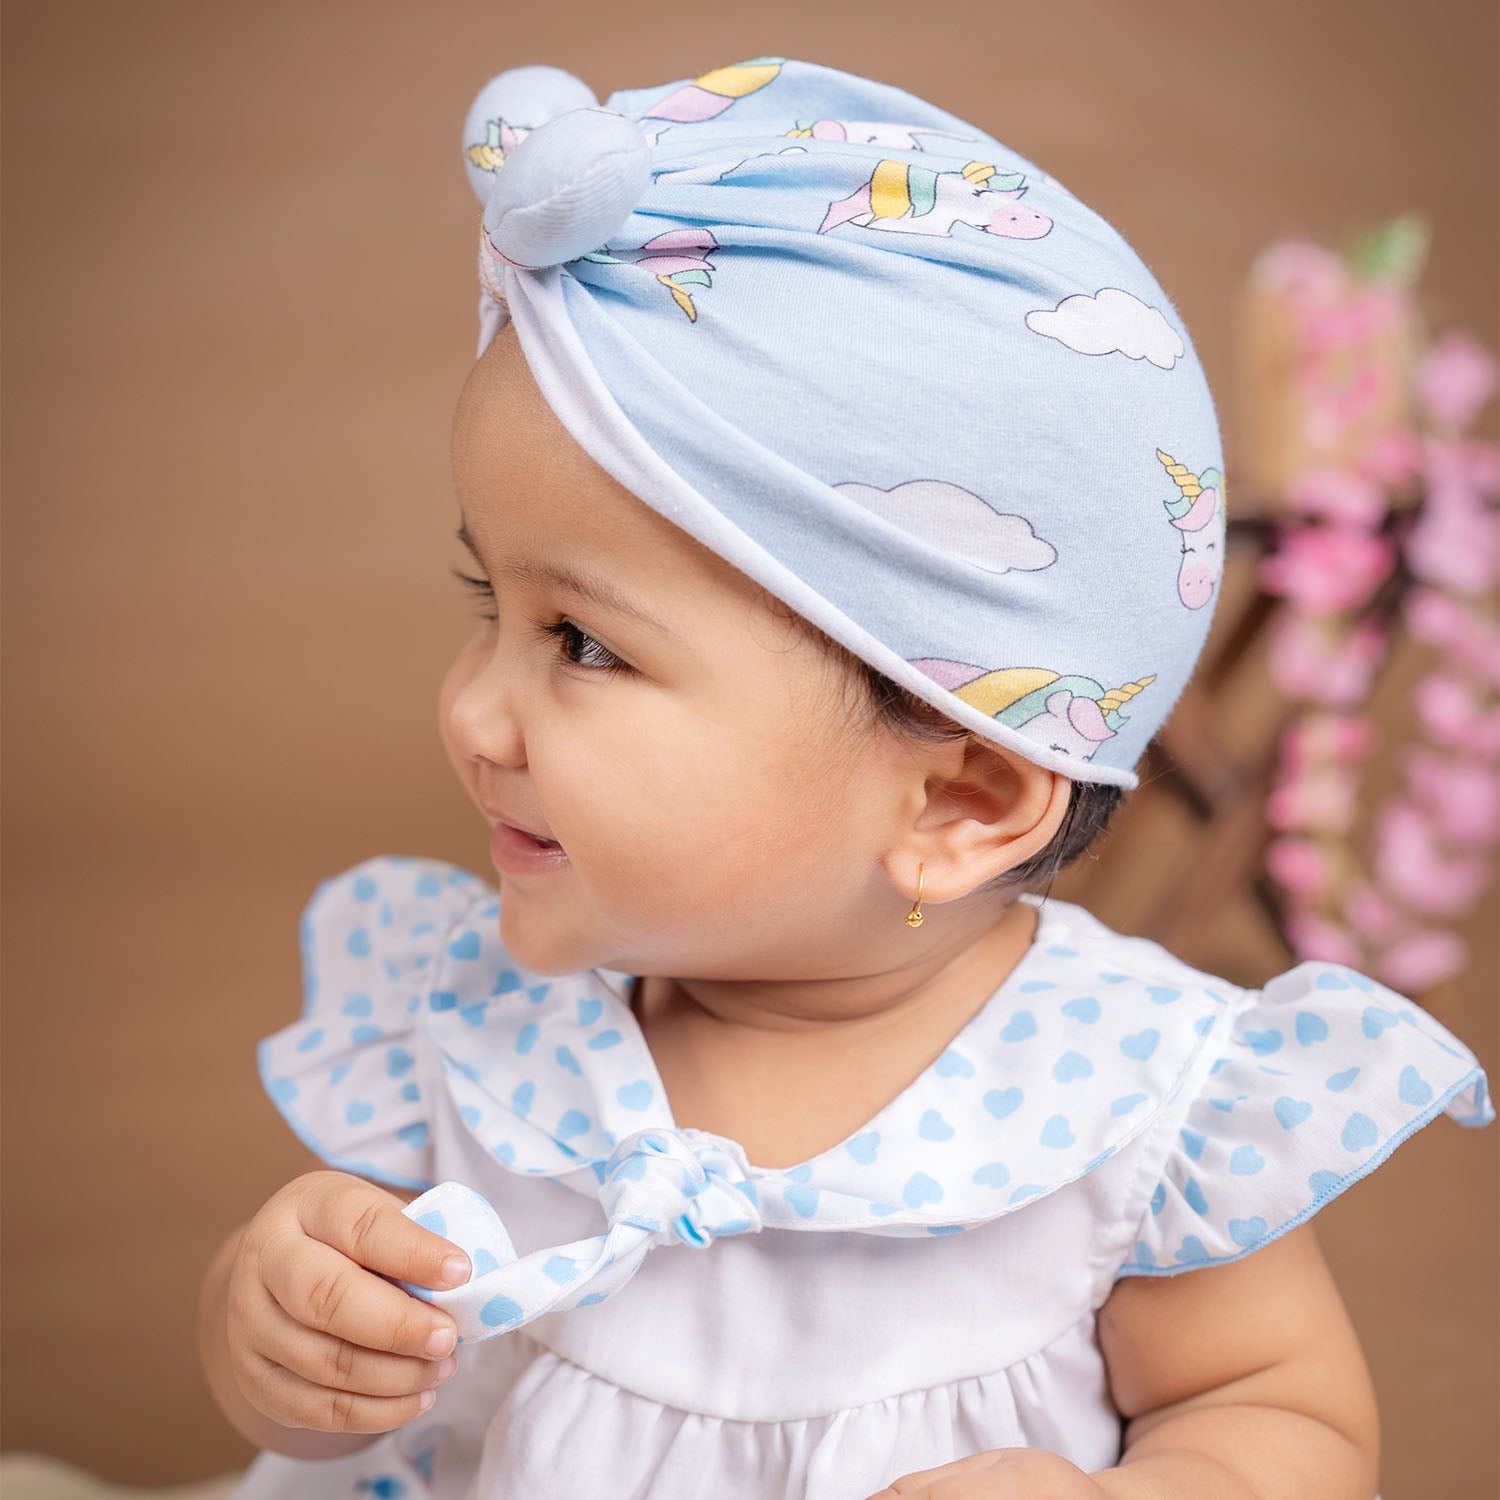 Baby Moo Unicorn Shiny Bow Matching Cap And Socks Set - Blue - Baby Moo